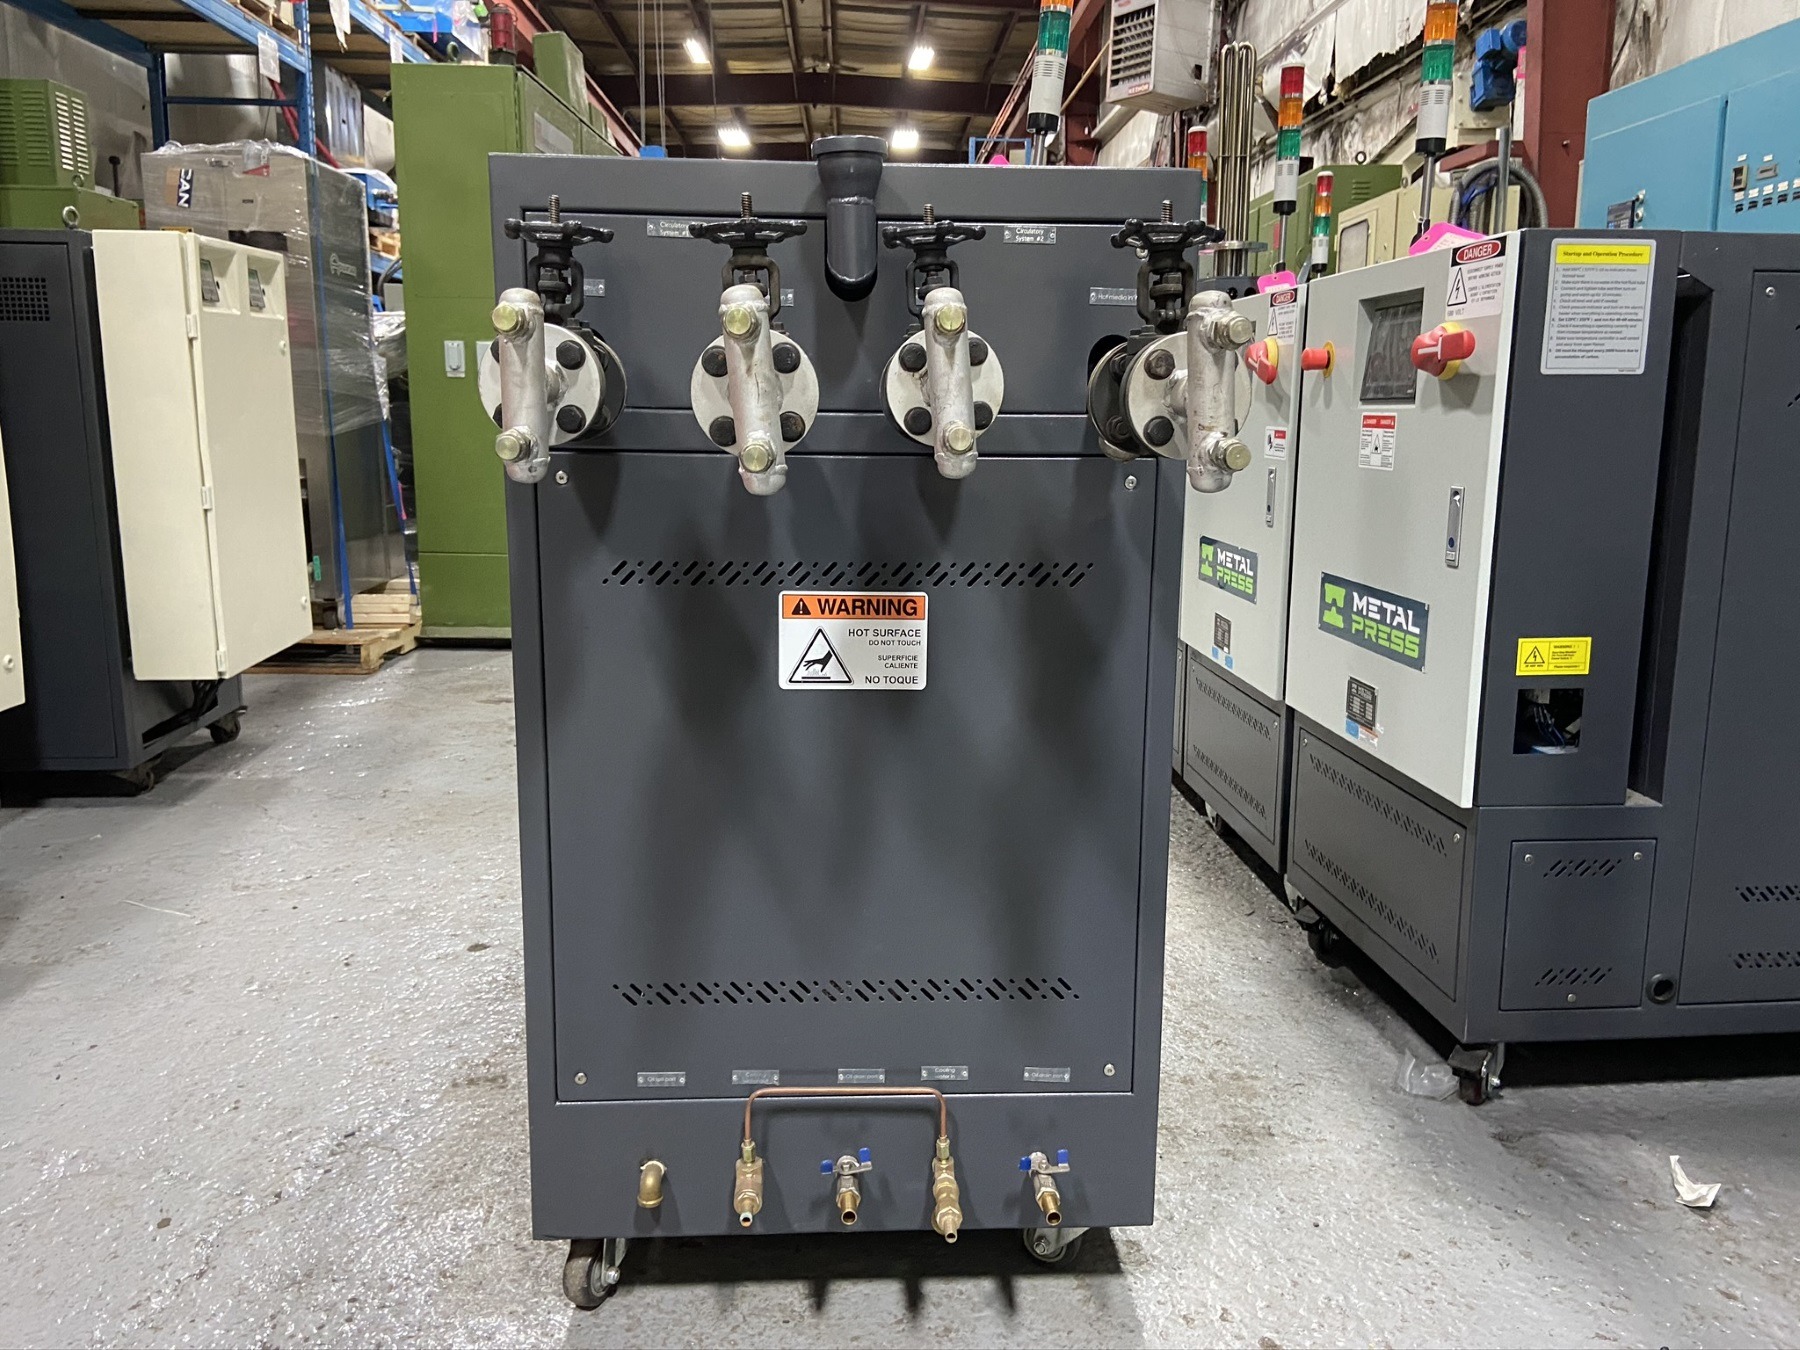 Picture of New MetalPress Hot oil Temperature Control Unit